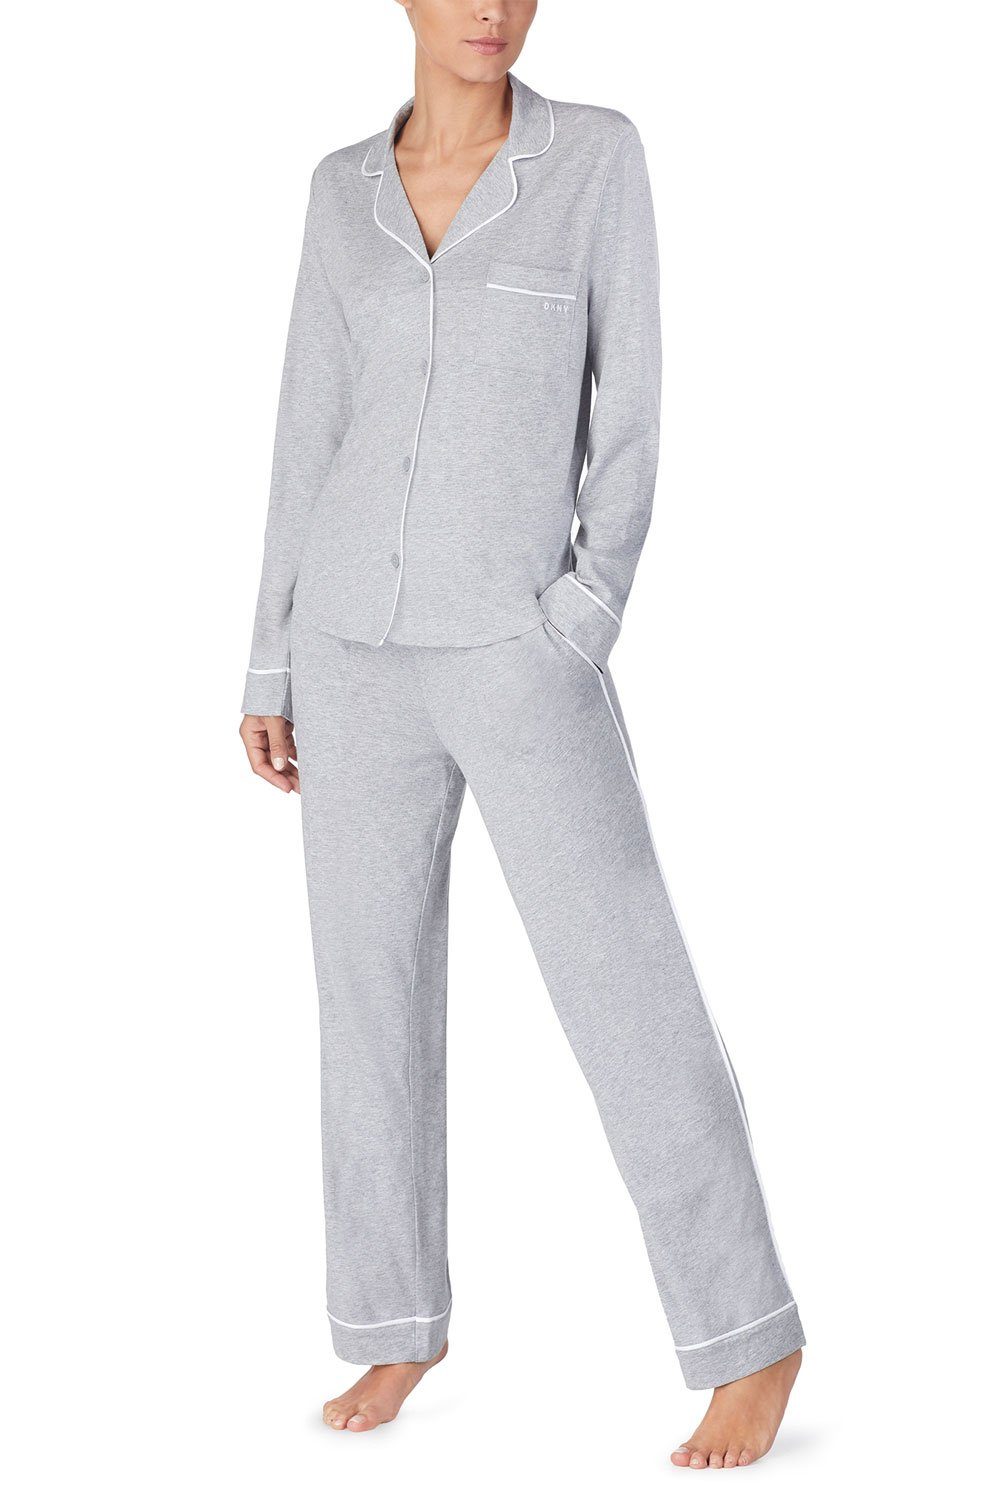 DKNY Pyjama Top & Pant Set YI2719259 grey